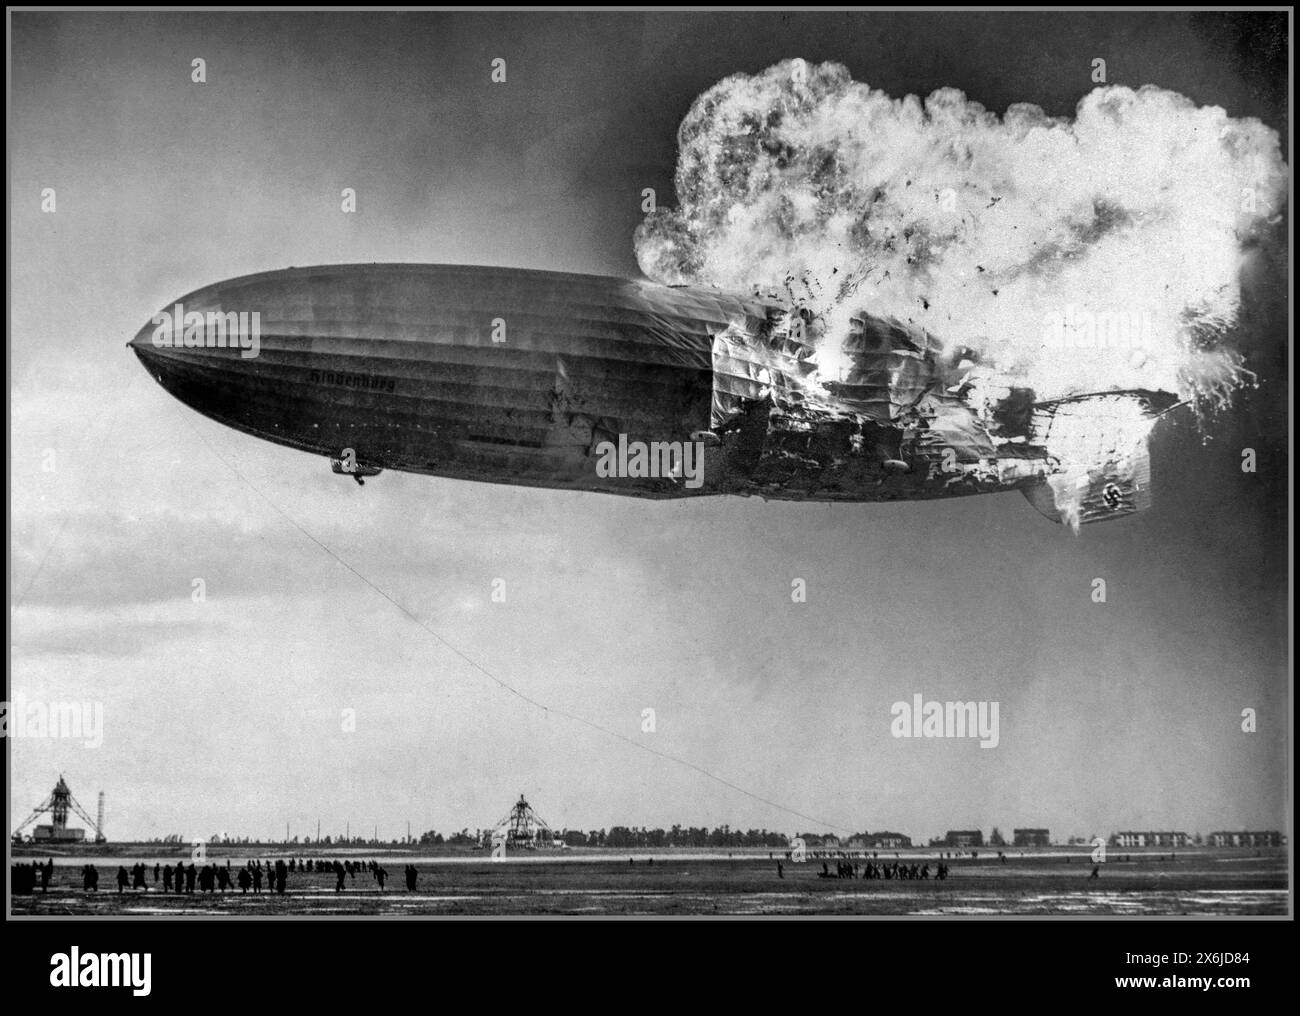 La catastrophe de Hindenburg Zeppelin est un accident de dirigeable survenu le 6 mai 1937 dans le canton de Manchester, New Jersey, États-Unis le LZ 129 Hindenburg (Luftschiff Zeppelin #129 ; immatriculation : d-LZ 129) était un dirigeable rigide commercial allemand transportant des passagers, le navire principal de la classe Hindenburg, la plus longue classe d'engin volant et le plus grand dirigeable par volume d'enveloppe, il a été conçu et construit par la société Zeppelin (Luftschiffbau Zeppelin GmbH) et a été exploité par la compagnie aérienne allemande Zeppelin (Deutsche Zeppelin-Reederei). Il a été nommé d'après le maréchal Paul von Hindenburg. Banque D'Images